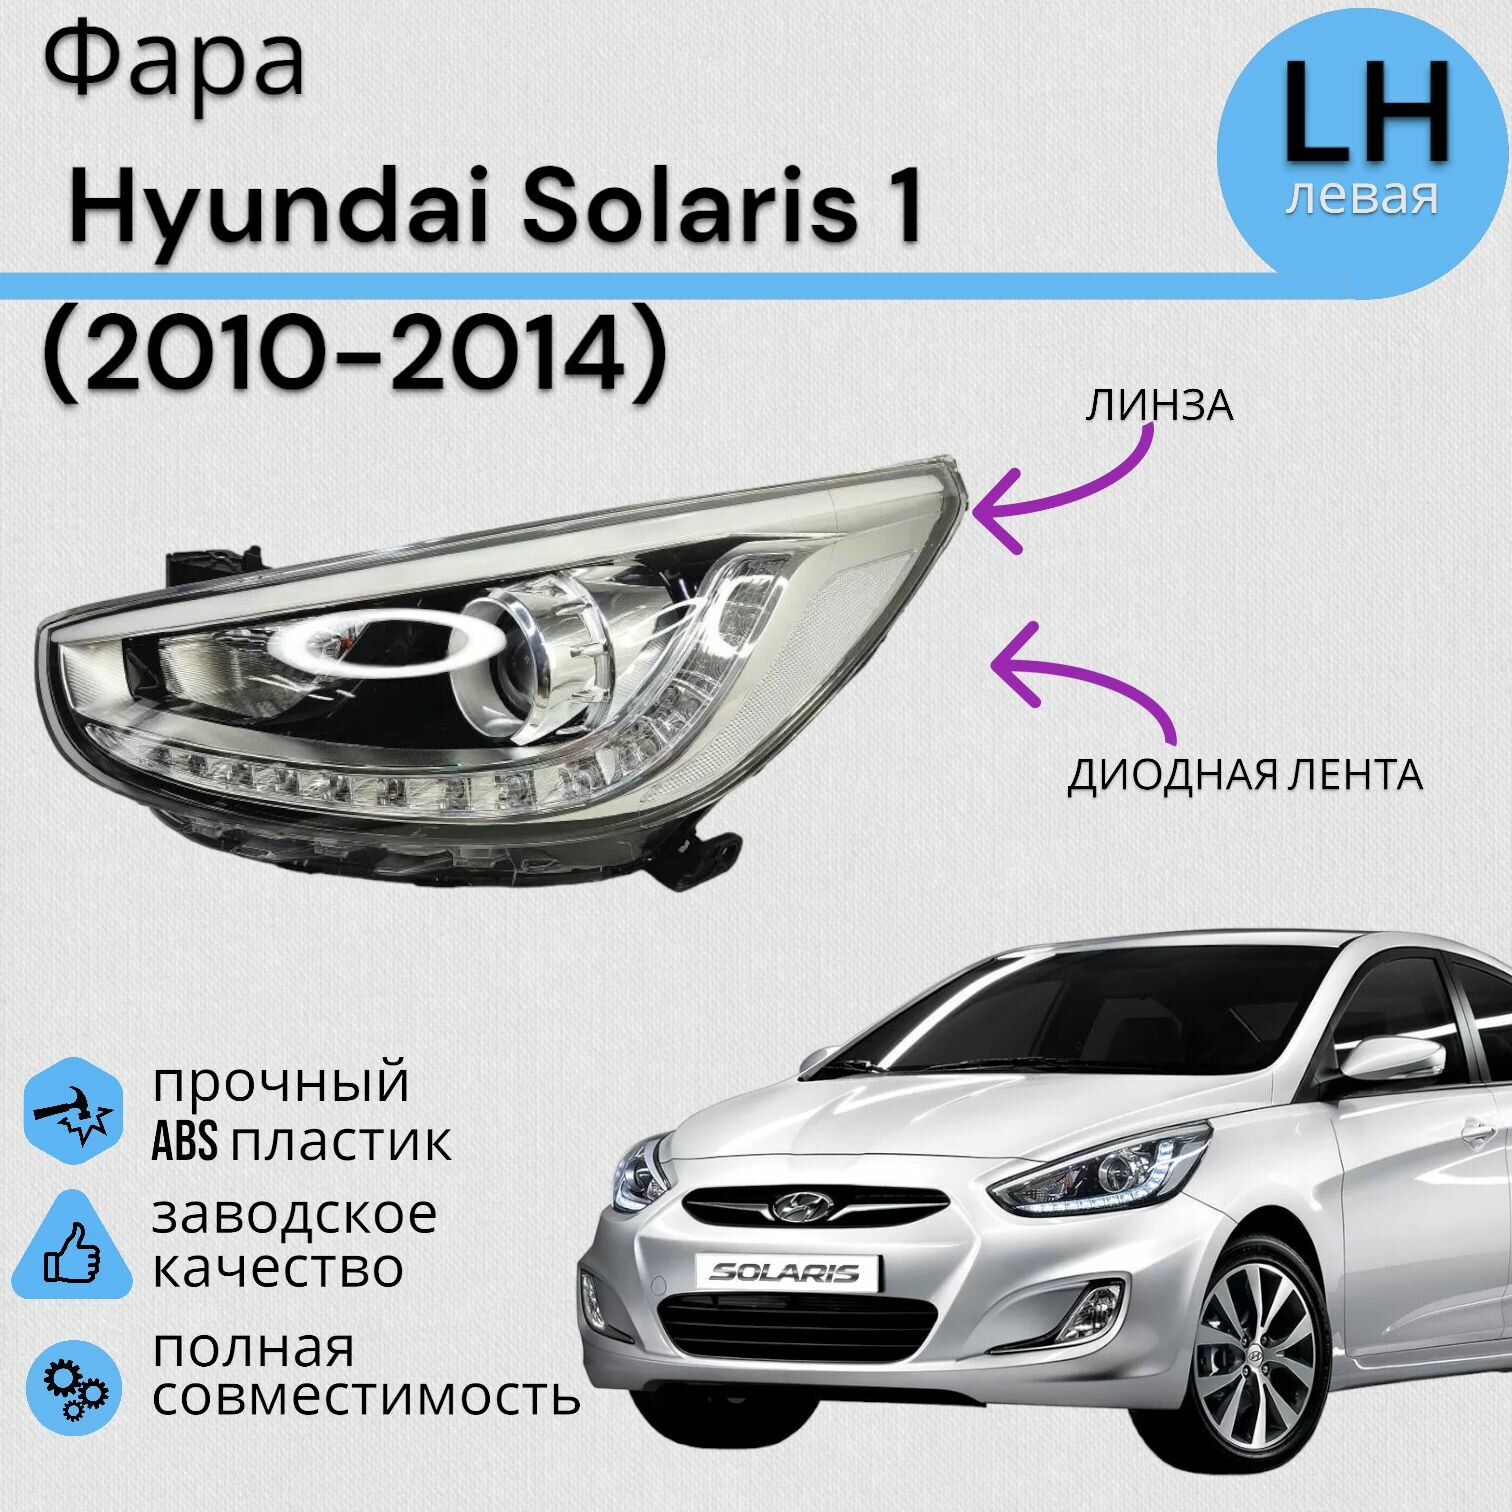 Фара Хендай Солярис 1 Hyundai Solaris 1 (2010-2014) линза+Диодная лента левая